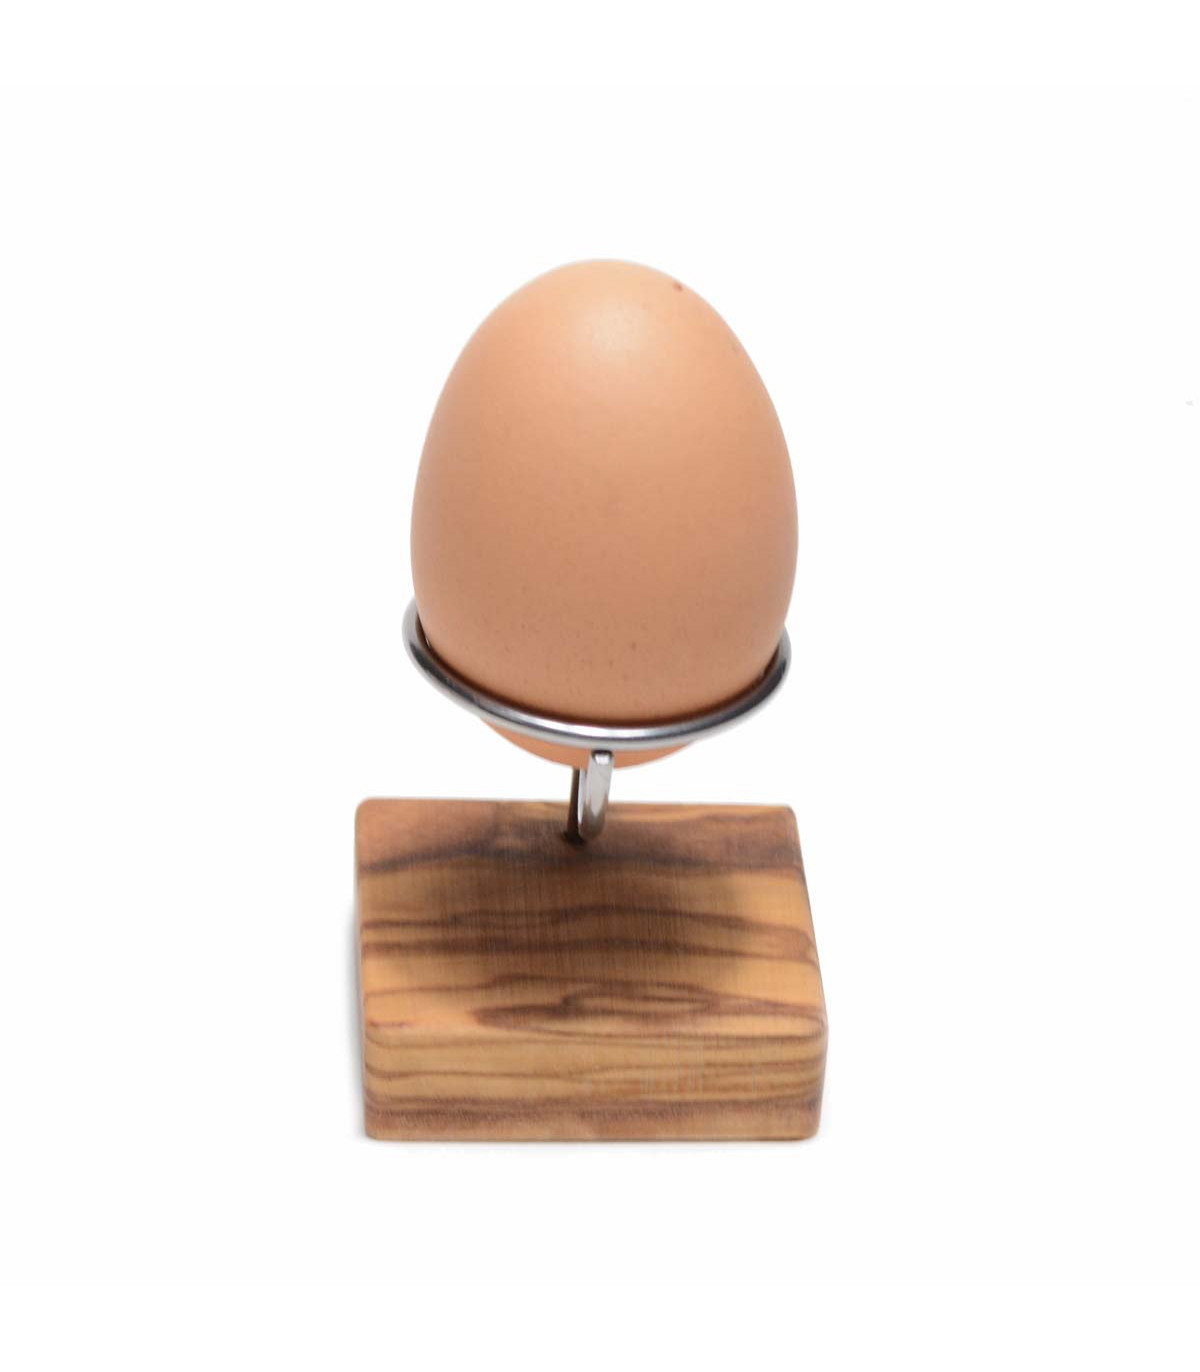 https://takaterra.com/3356-superlarge_default/olive-wood-egg-holder-olivenholz.jpg